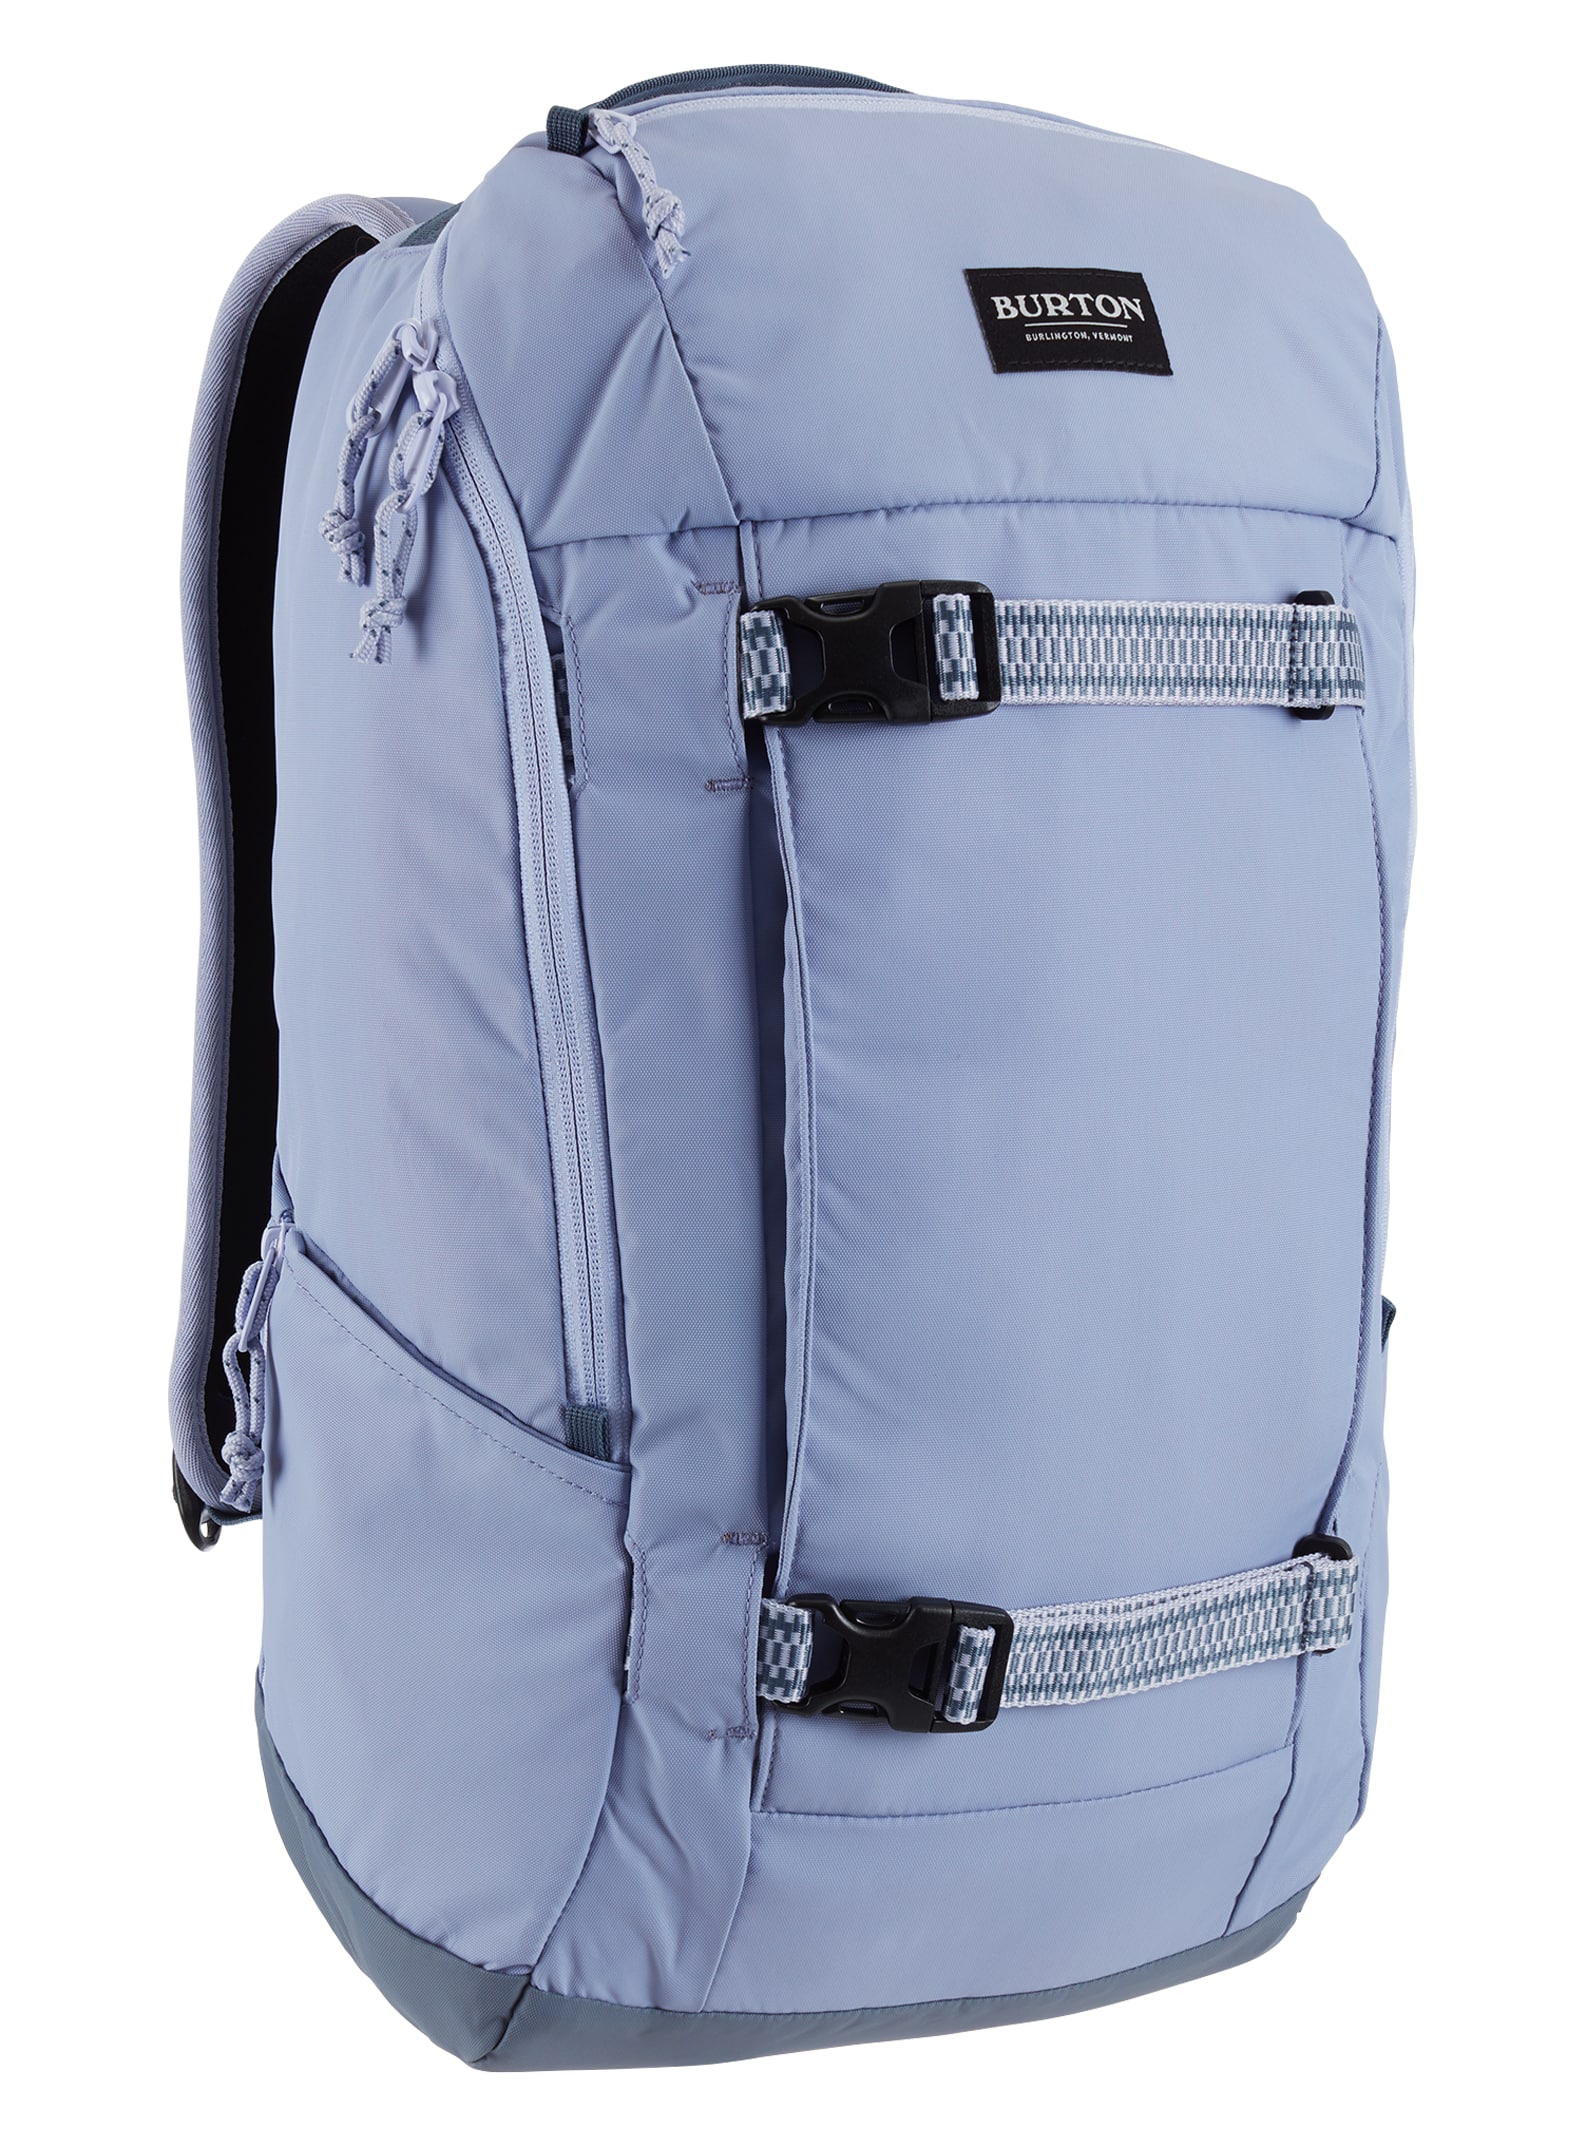 Burton Kilo 2.0 Rucksack Schule Freizeit Sport Tasche Backpack blue 21343100402 